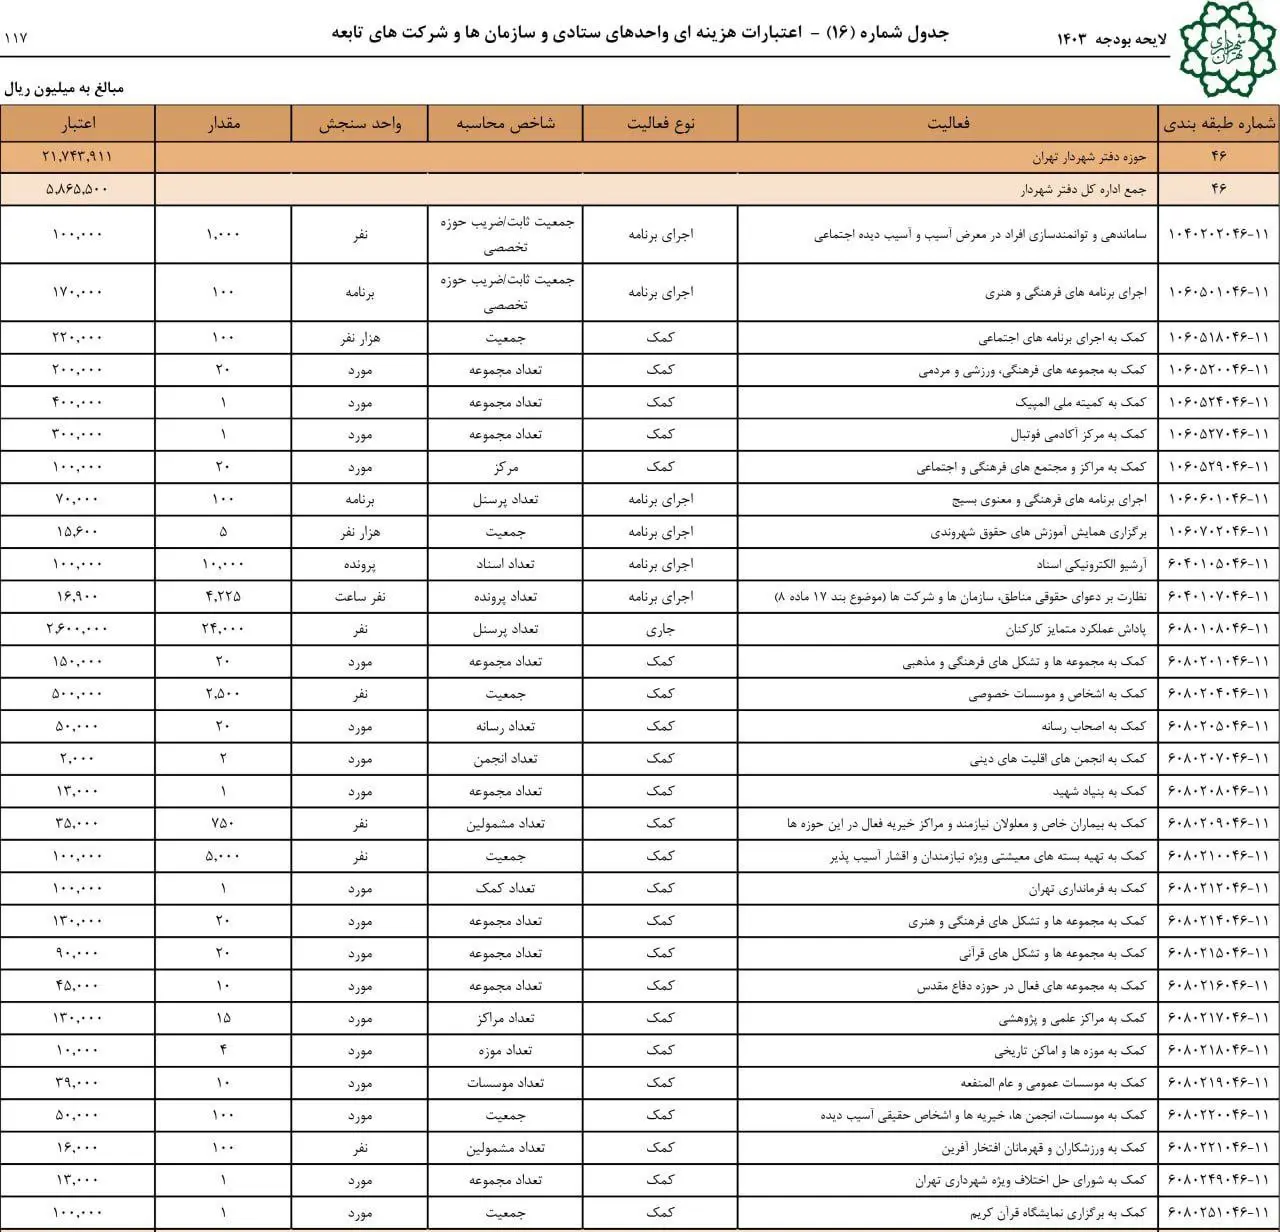 بودجه دفتر شهردار تهران